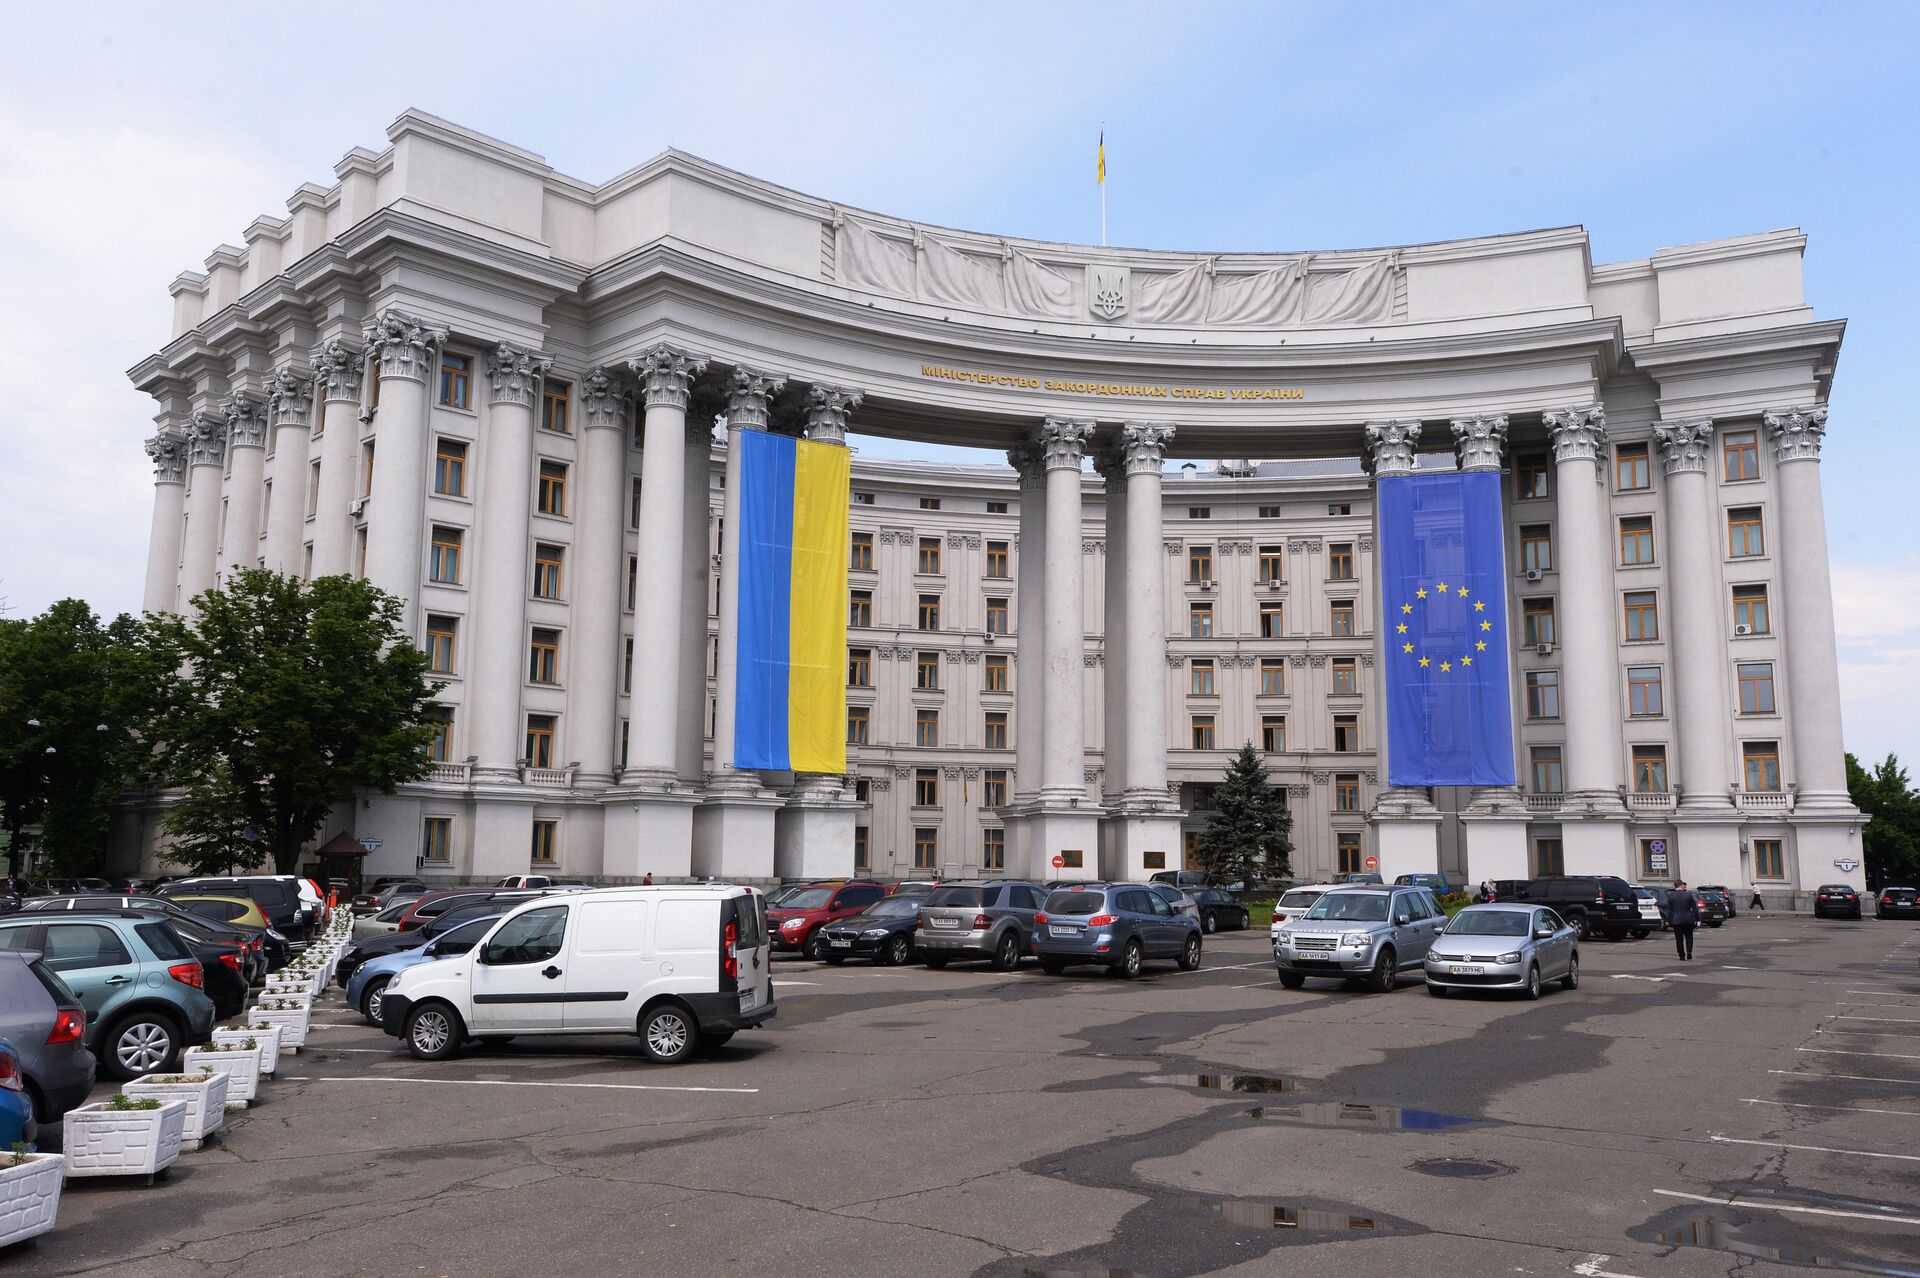 Здание МИДа Украины с национальным флагом Украины и флагом Евросоюза на фасаде - РИА Новости, 1920, 19.07.2021